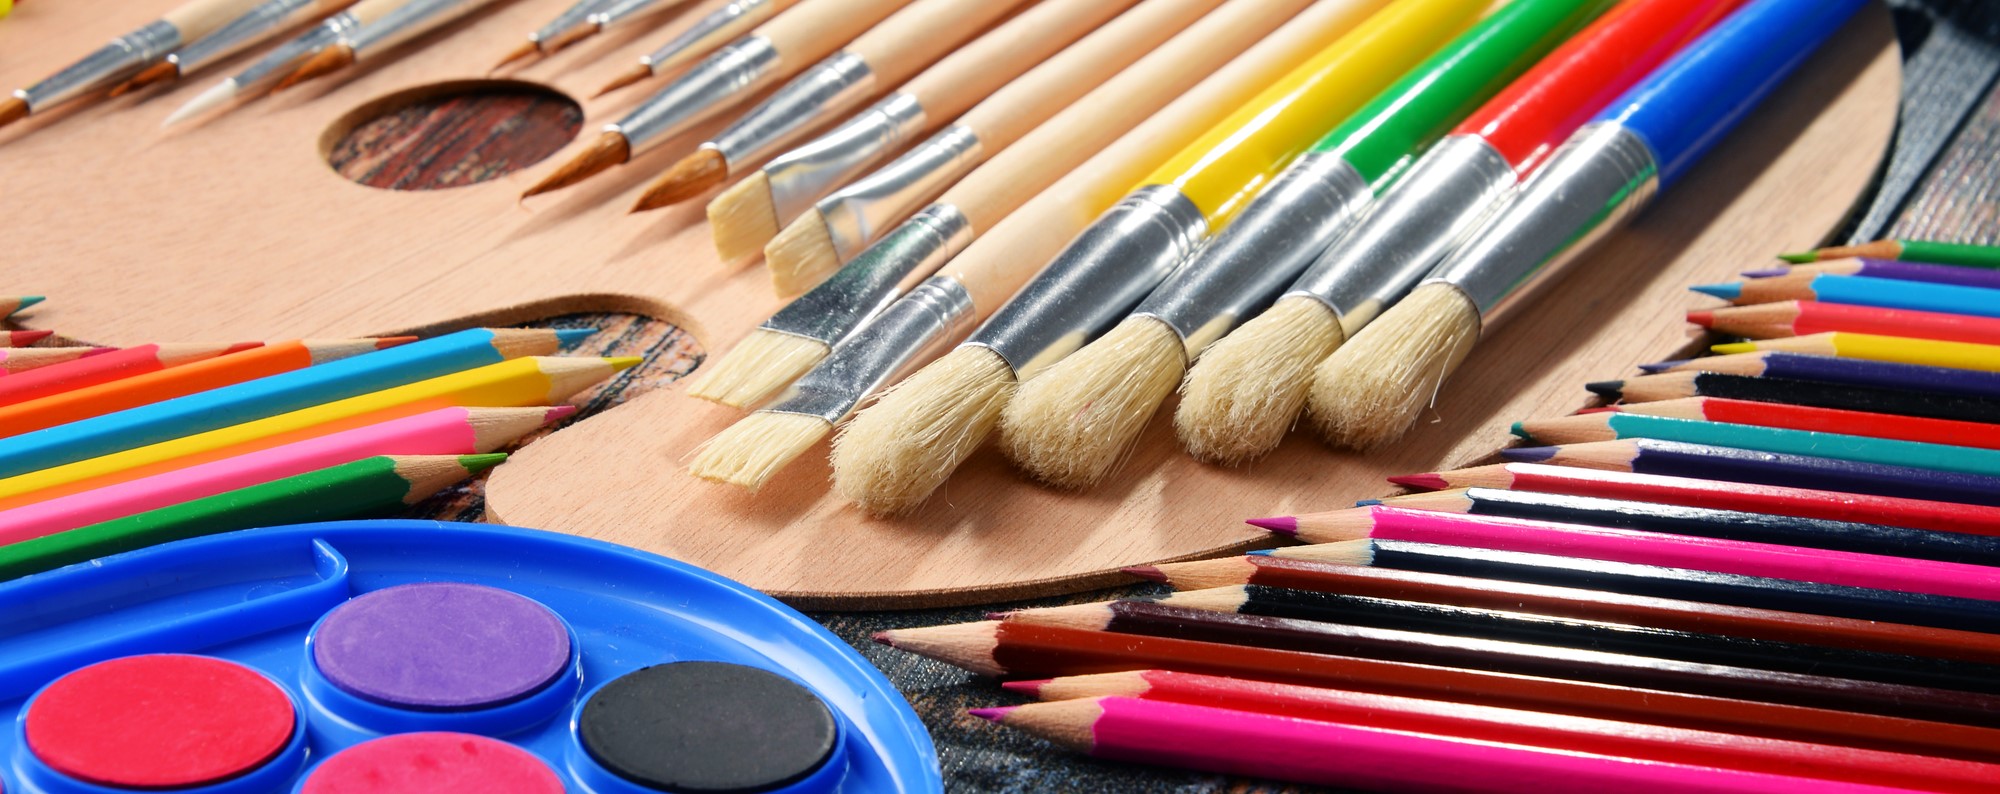 paint, paint brushes, color pencils 